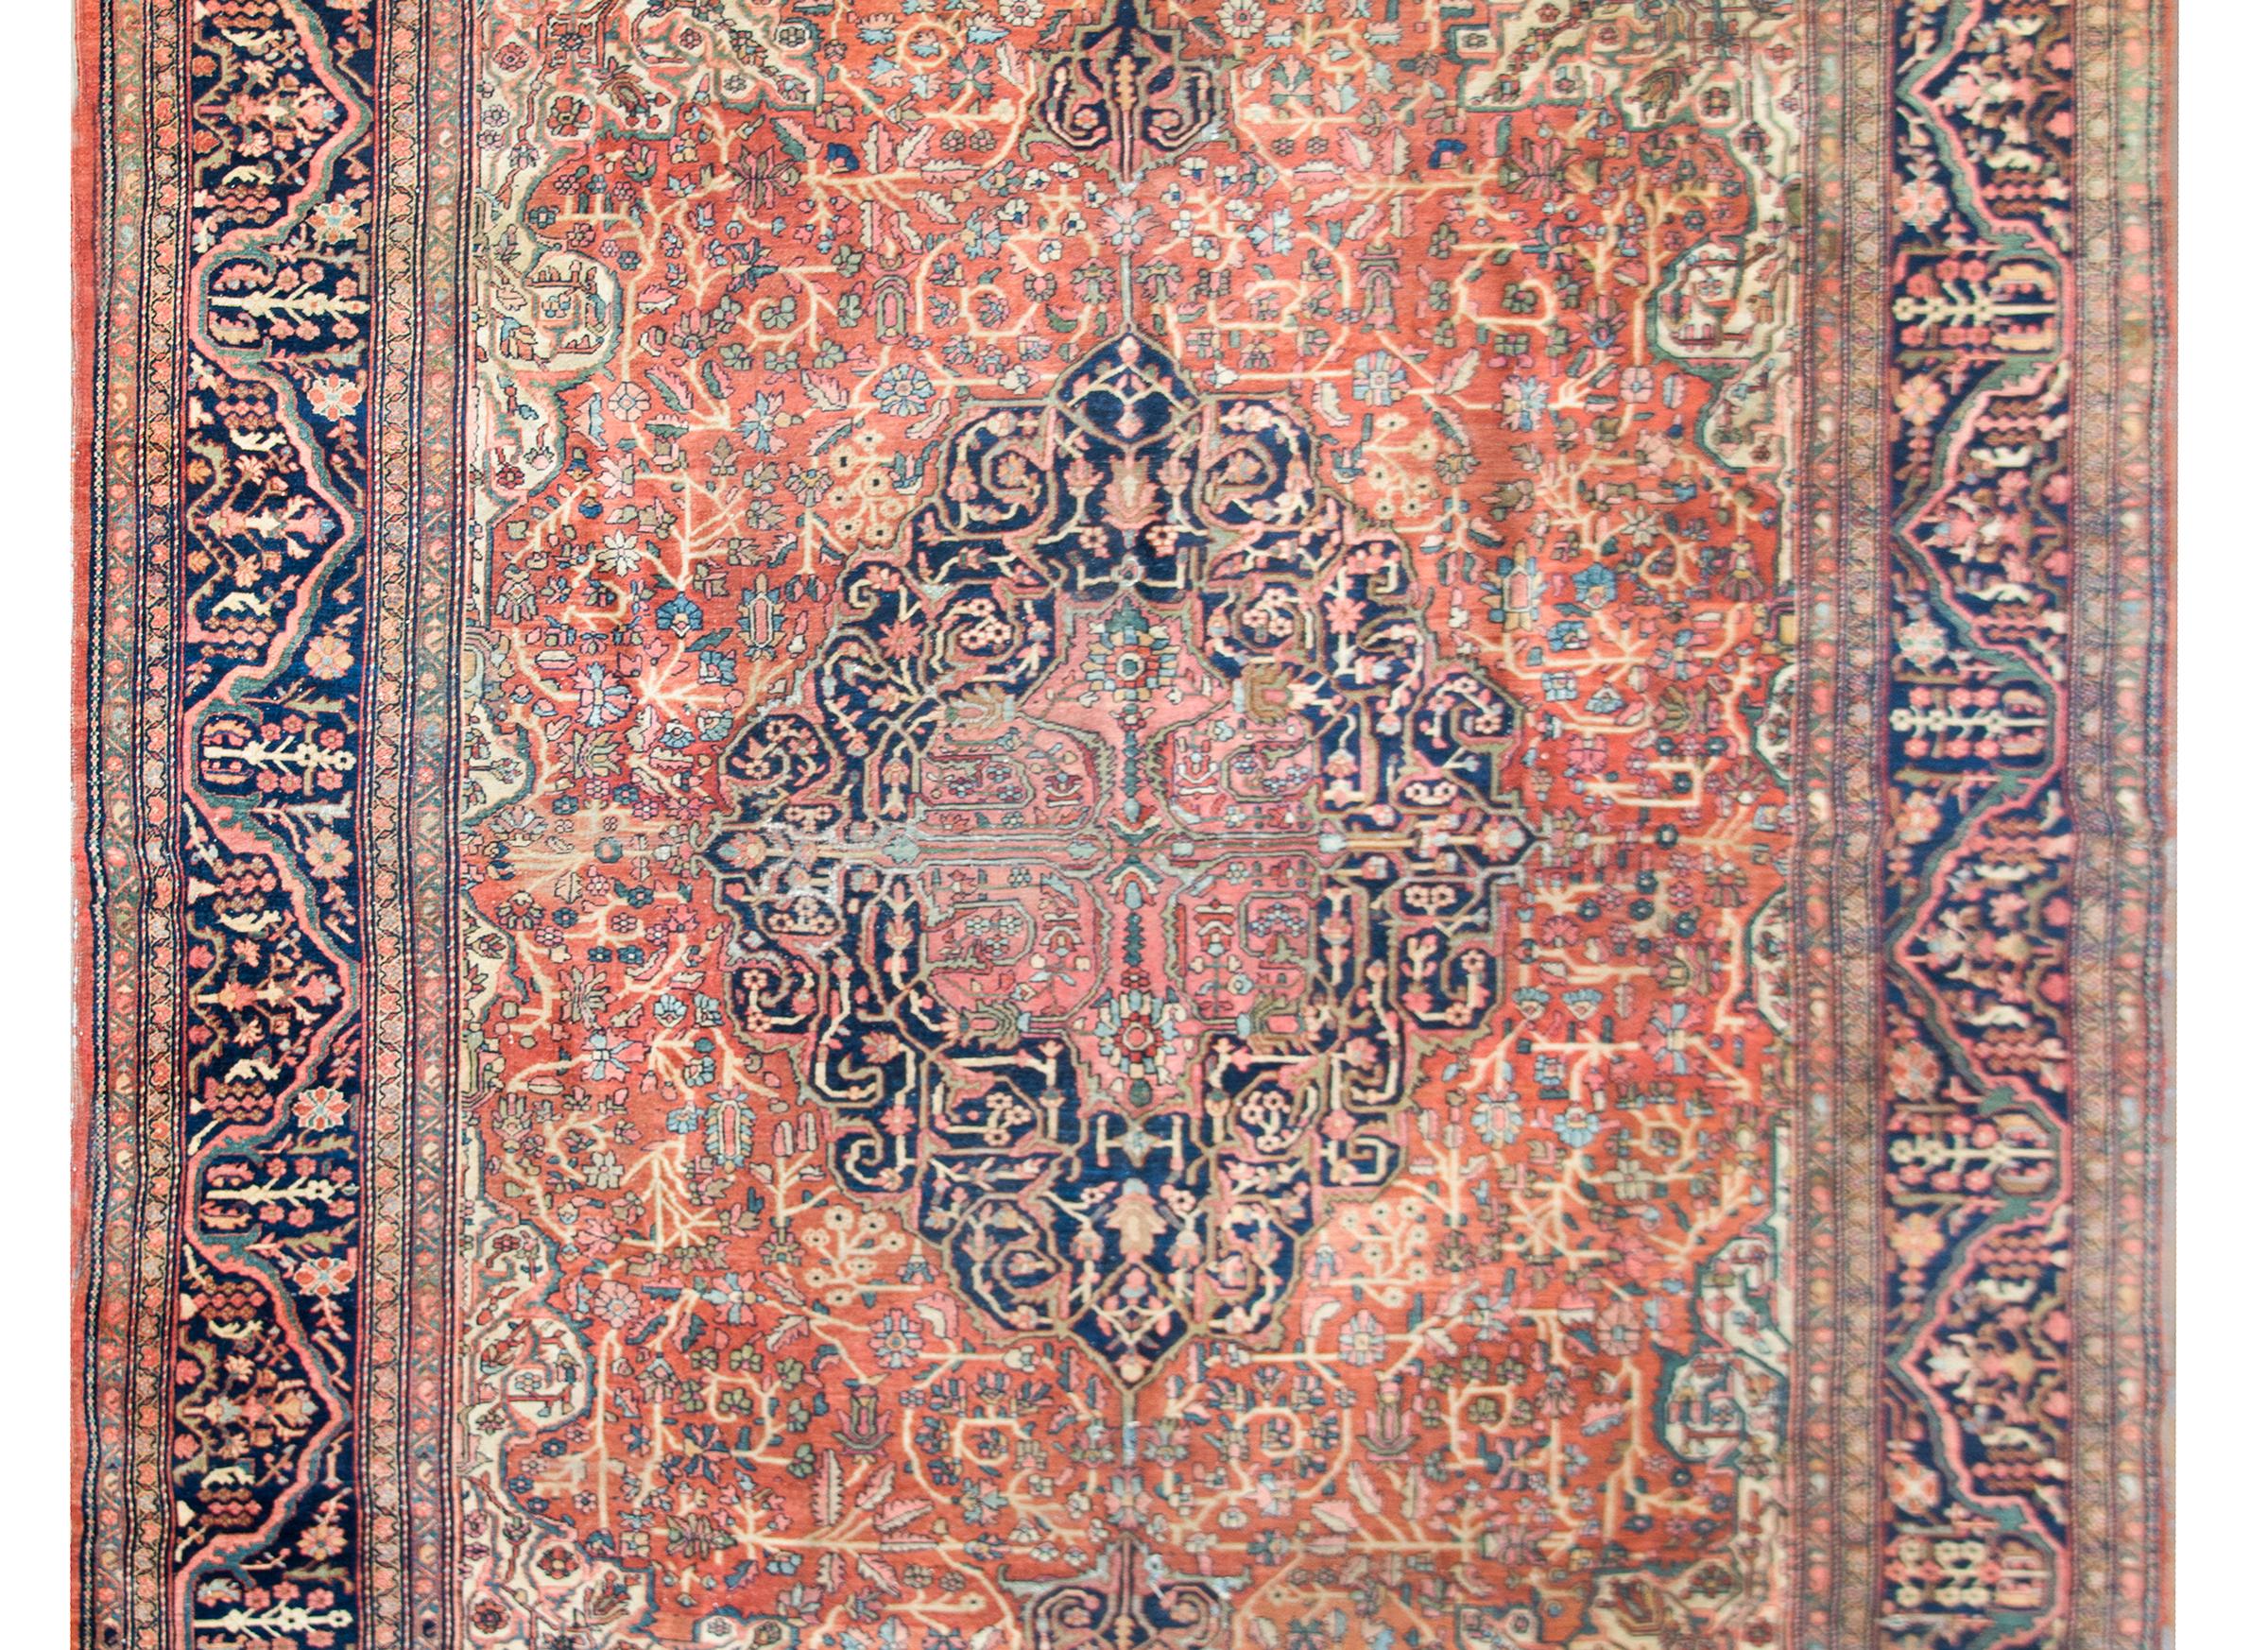 Ein unglaublicher persischer Sarouk-Teppich aus dem frühen 20. Jahrhundert mit einem sehr aufwändigen zentralen Medaillon mit dicht gewebten Ranken- und Blumenmustern in unzähligen Farben, darunter Koralle, helles und dunkles Indigo, Grün und Creme,